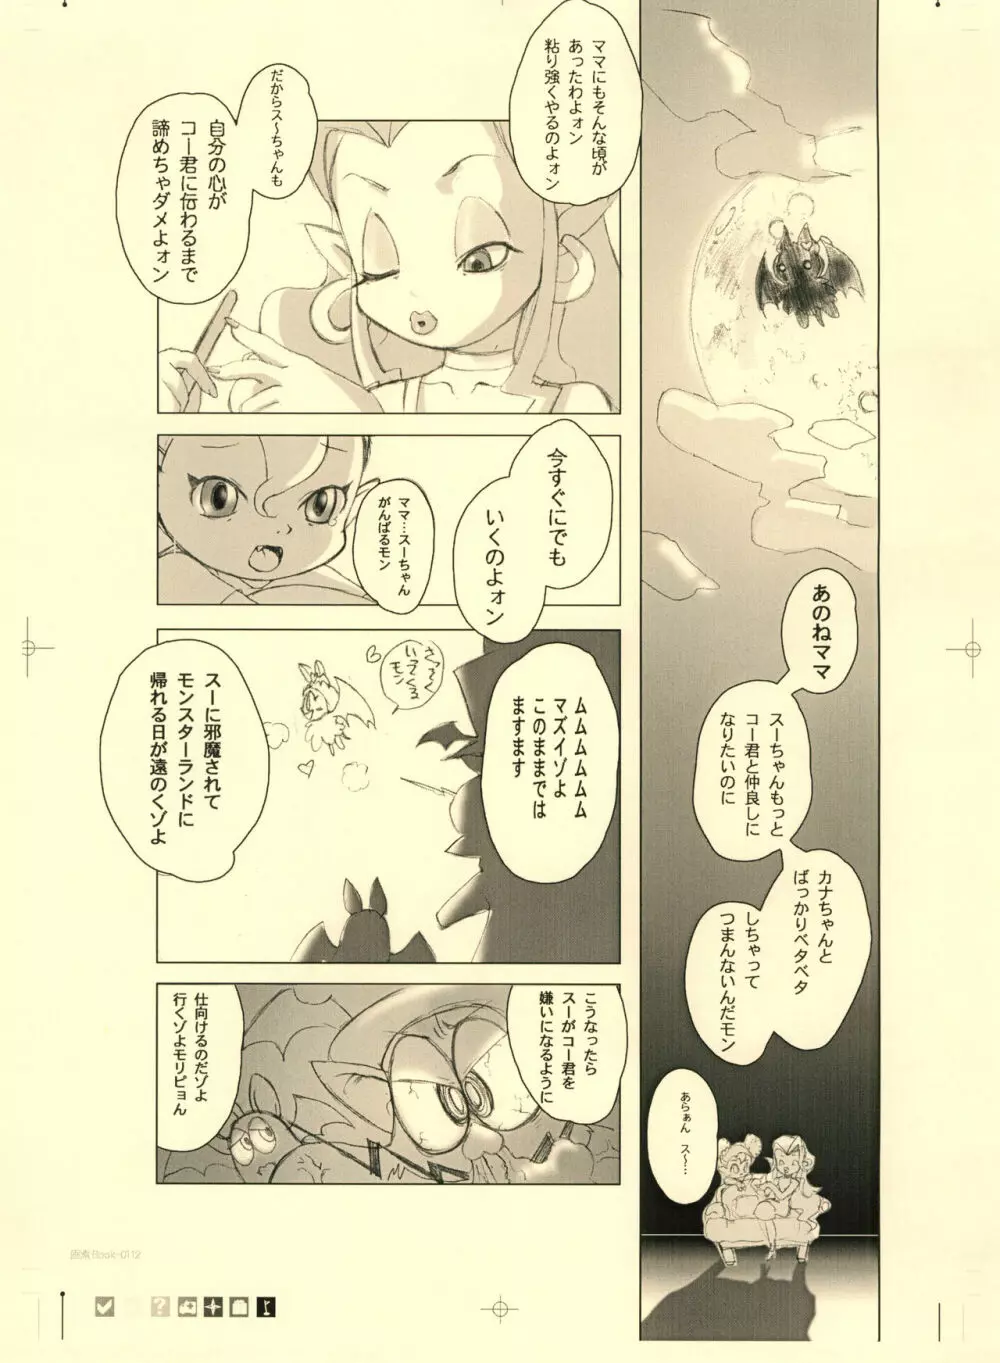 画素BooK 原稿用紙 キッズアニメトロニカ -0112 5ページ